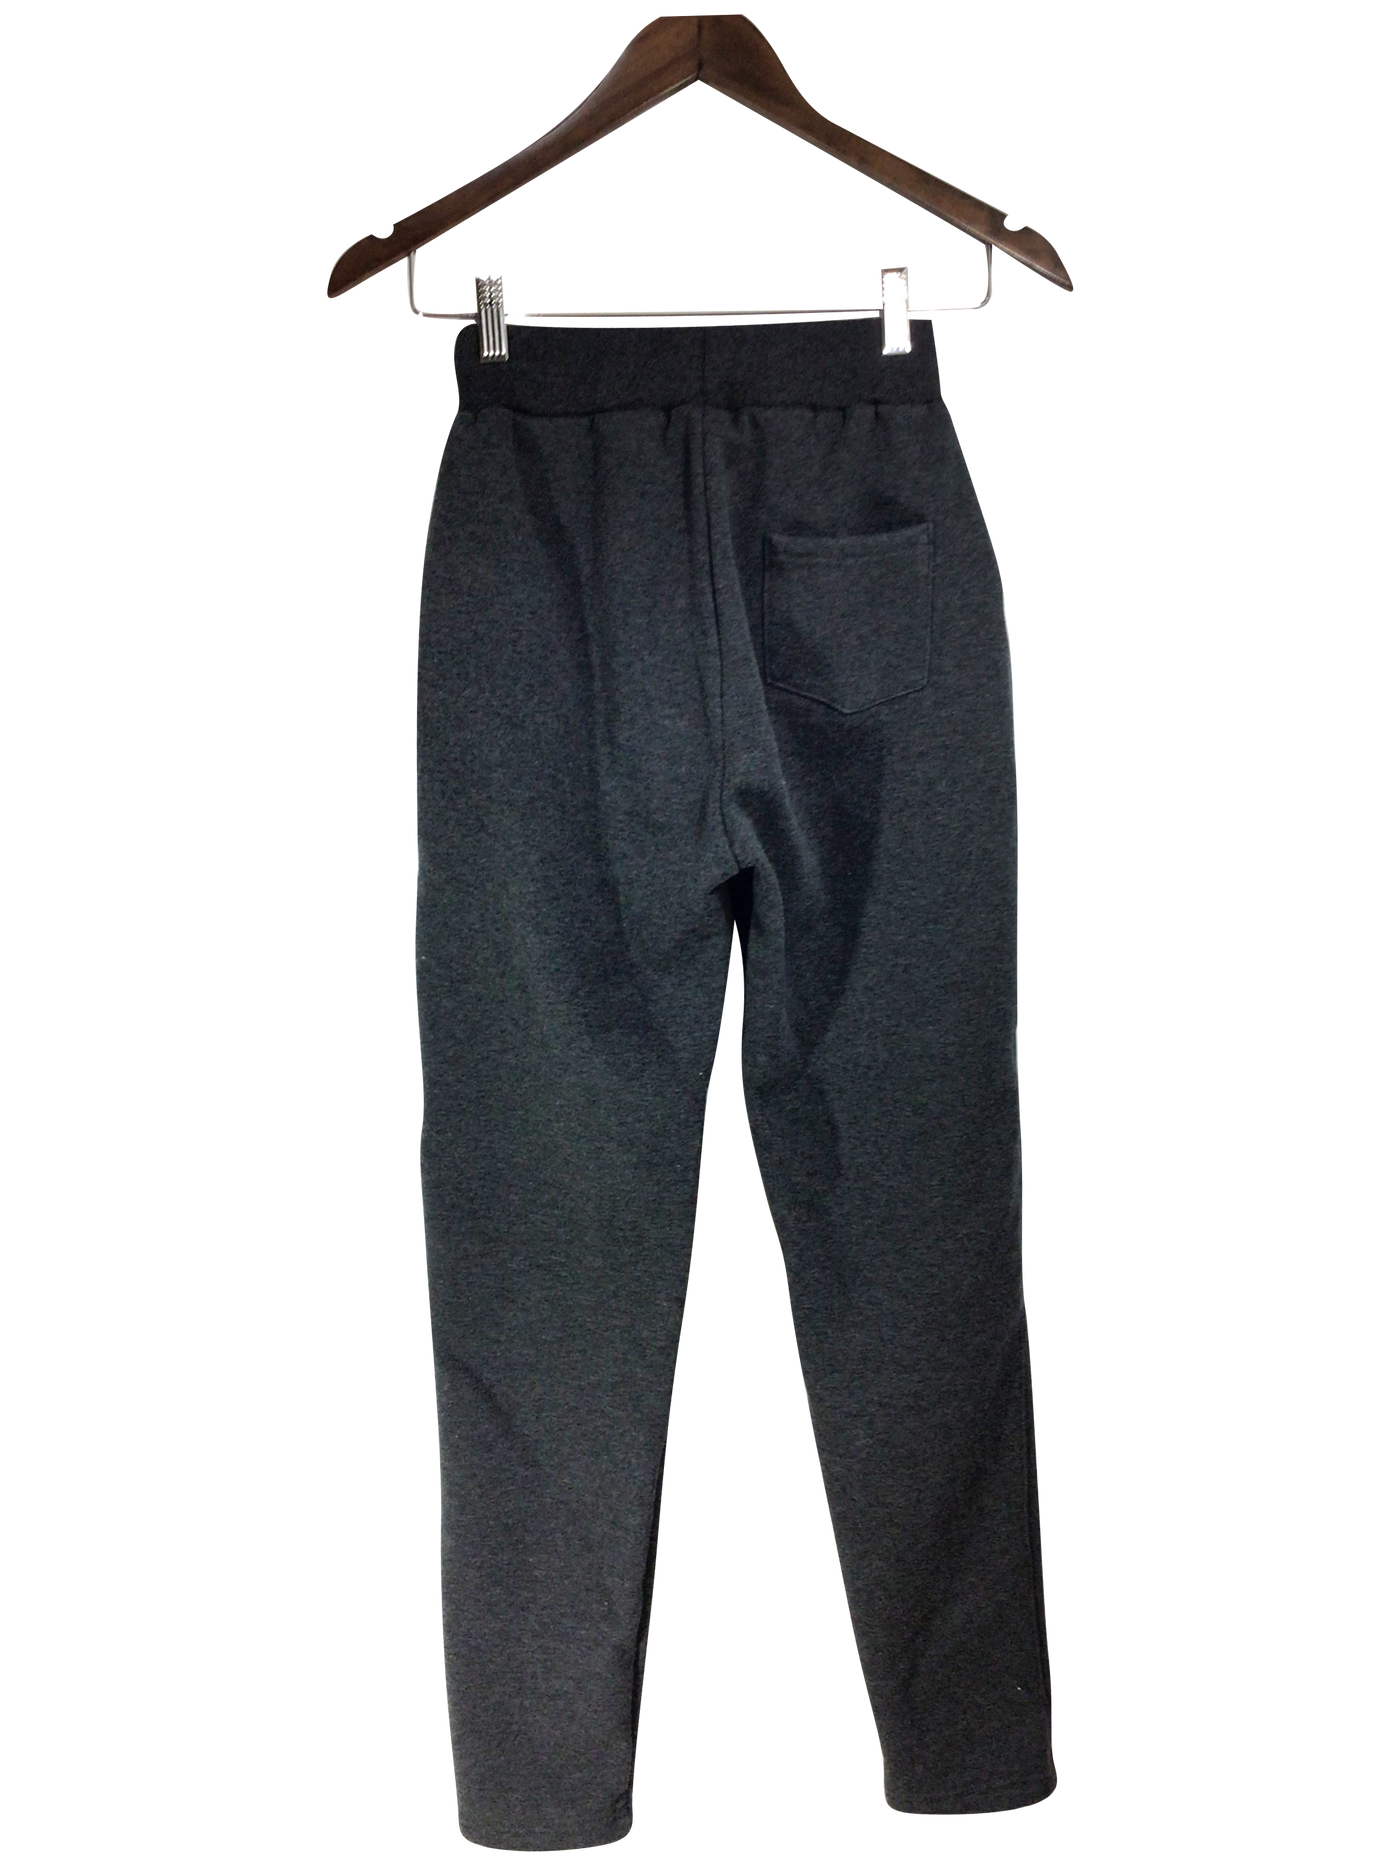 UNBRANDED Women Activewear Joggings Regular fit in Gray - Size S | 11.29 $ KOOP